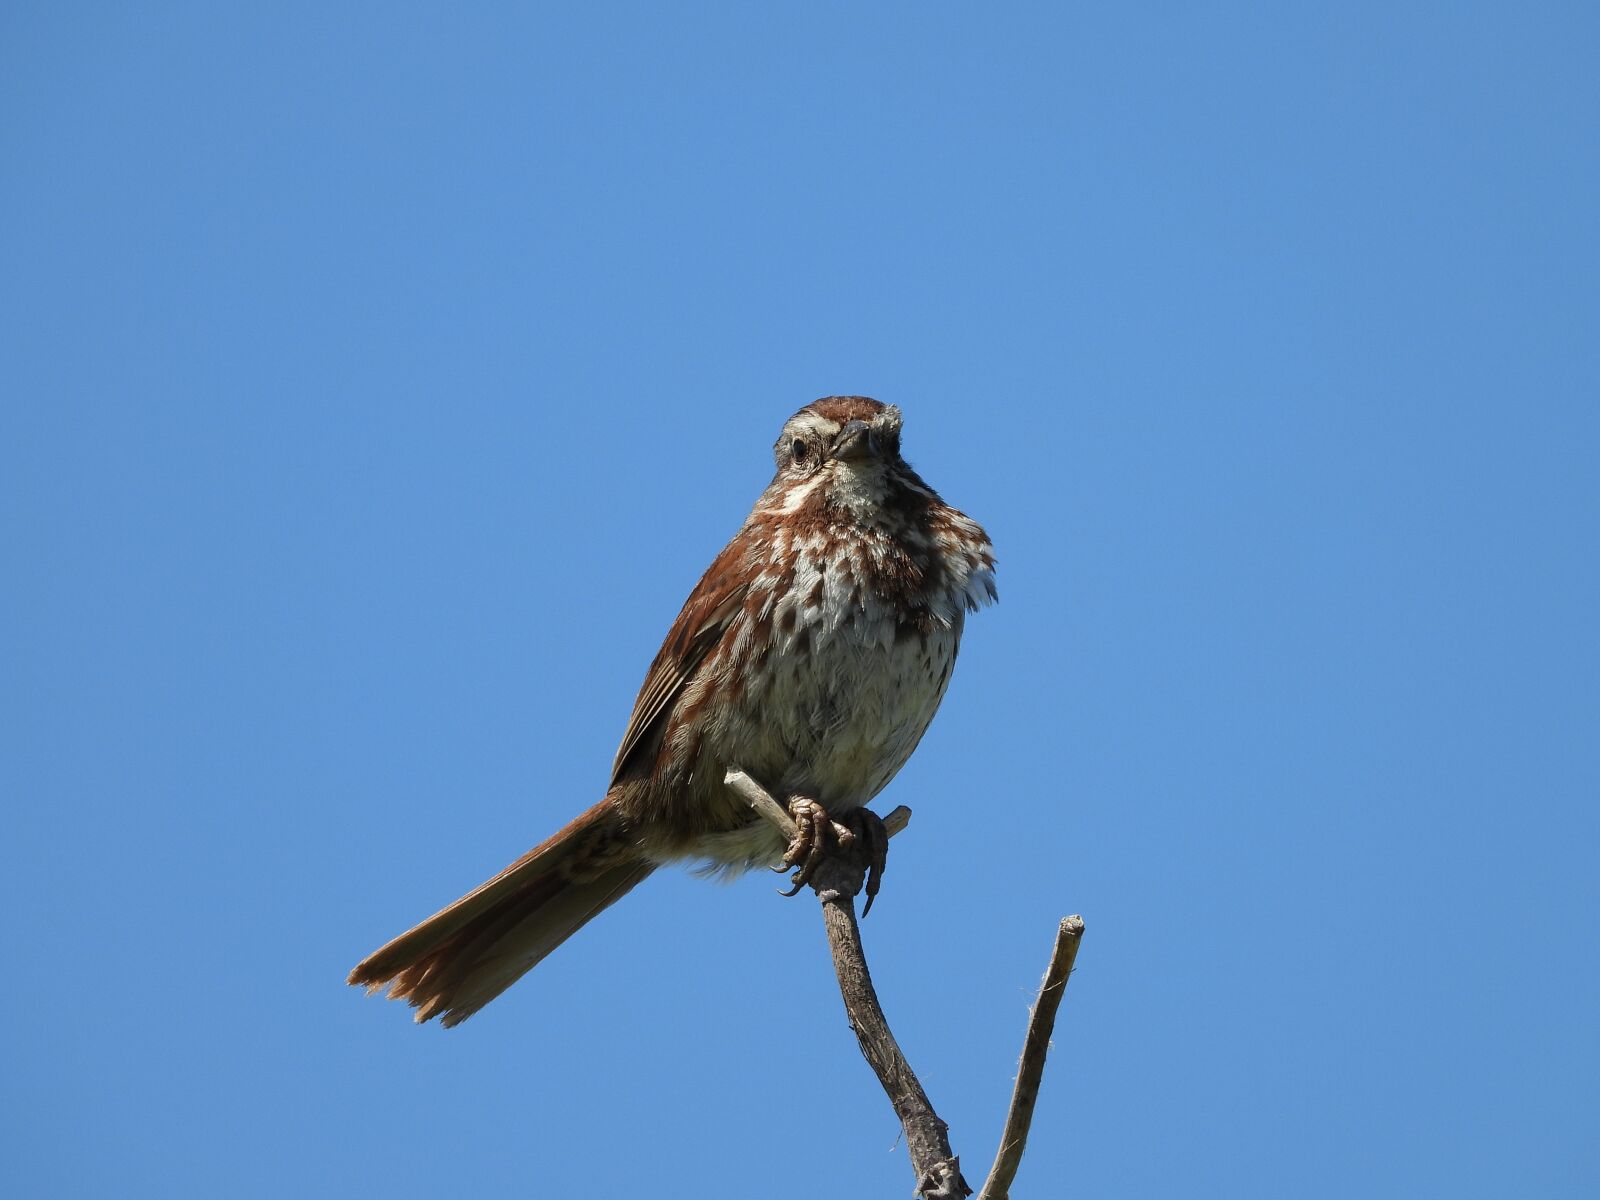 Nikon Coolpix P1000 sample photo. Song sparrow, bird, sing photography